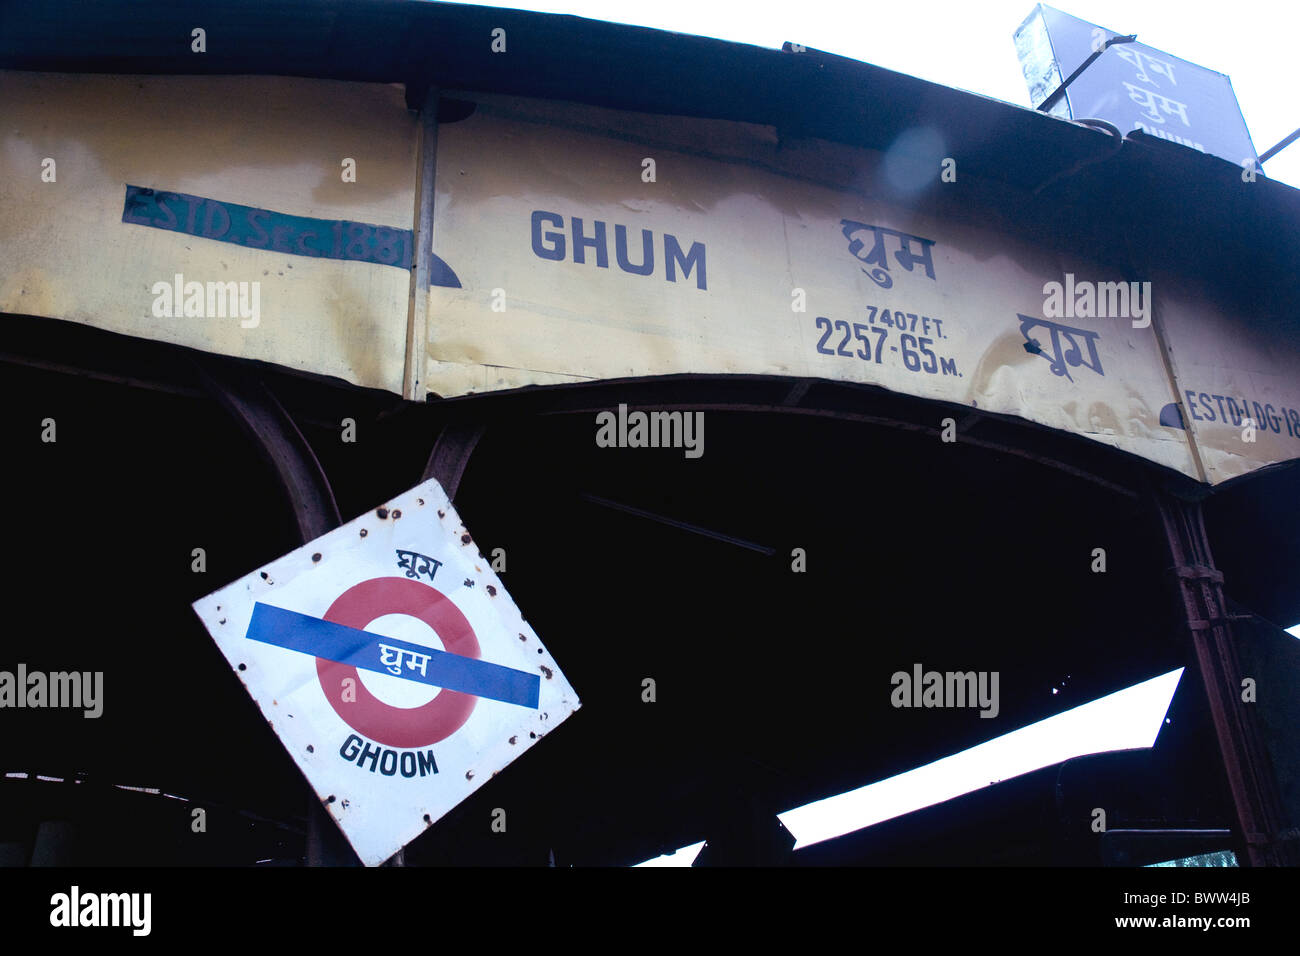 L'Himalayan Railway station signe à Ghoom, ou Ghum, près de Darjeeling, ainsi qu'une mention de son altitude Banque D'Images